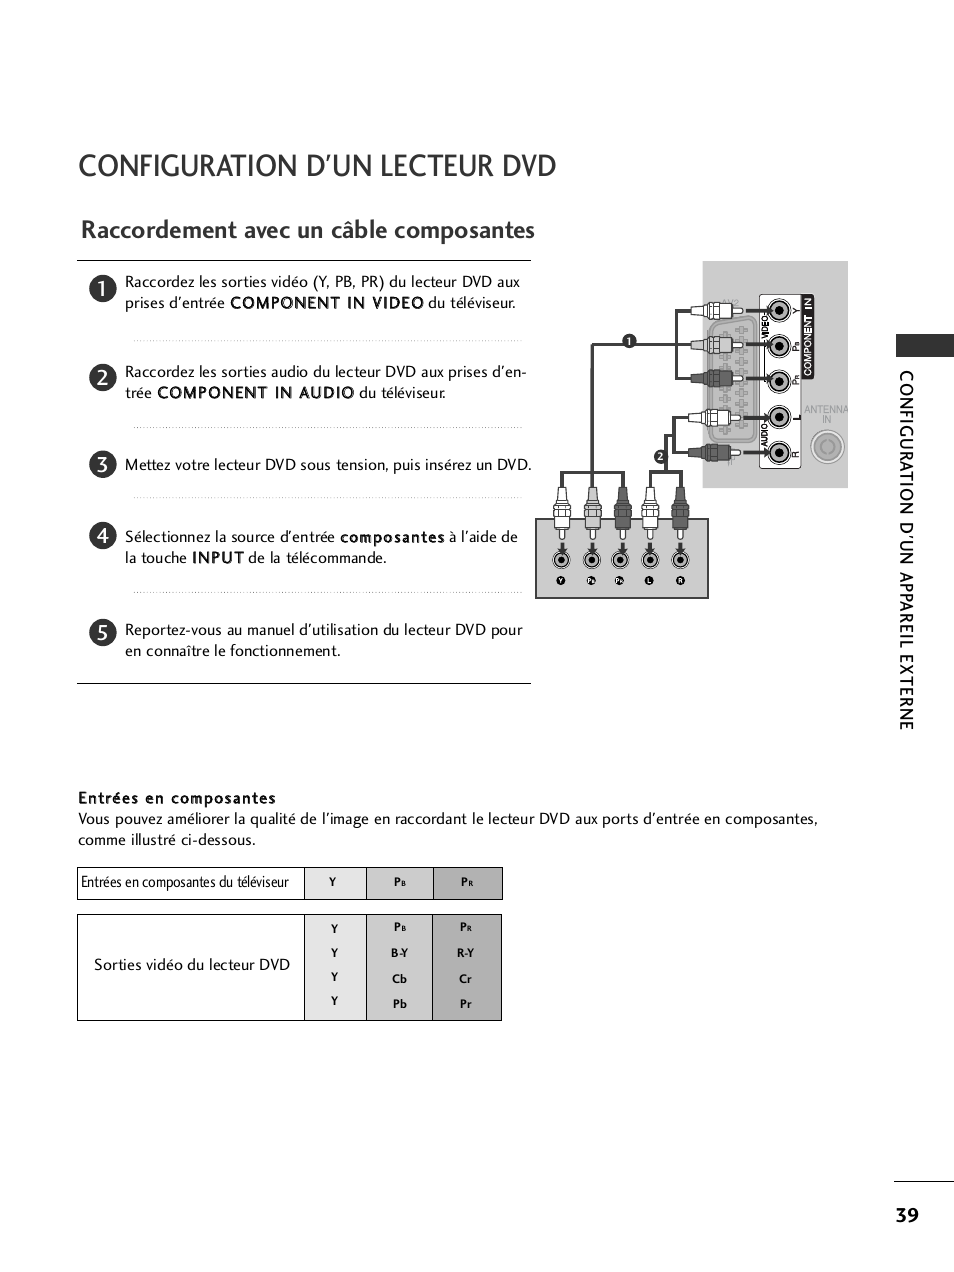 Configuration d'un lecteur dvd, Raccordement avec un câble composantes | LG 32LH40 Manuel d'utilisation | Page 41 / 180